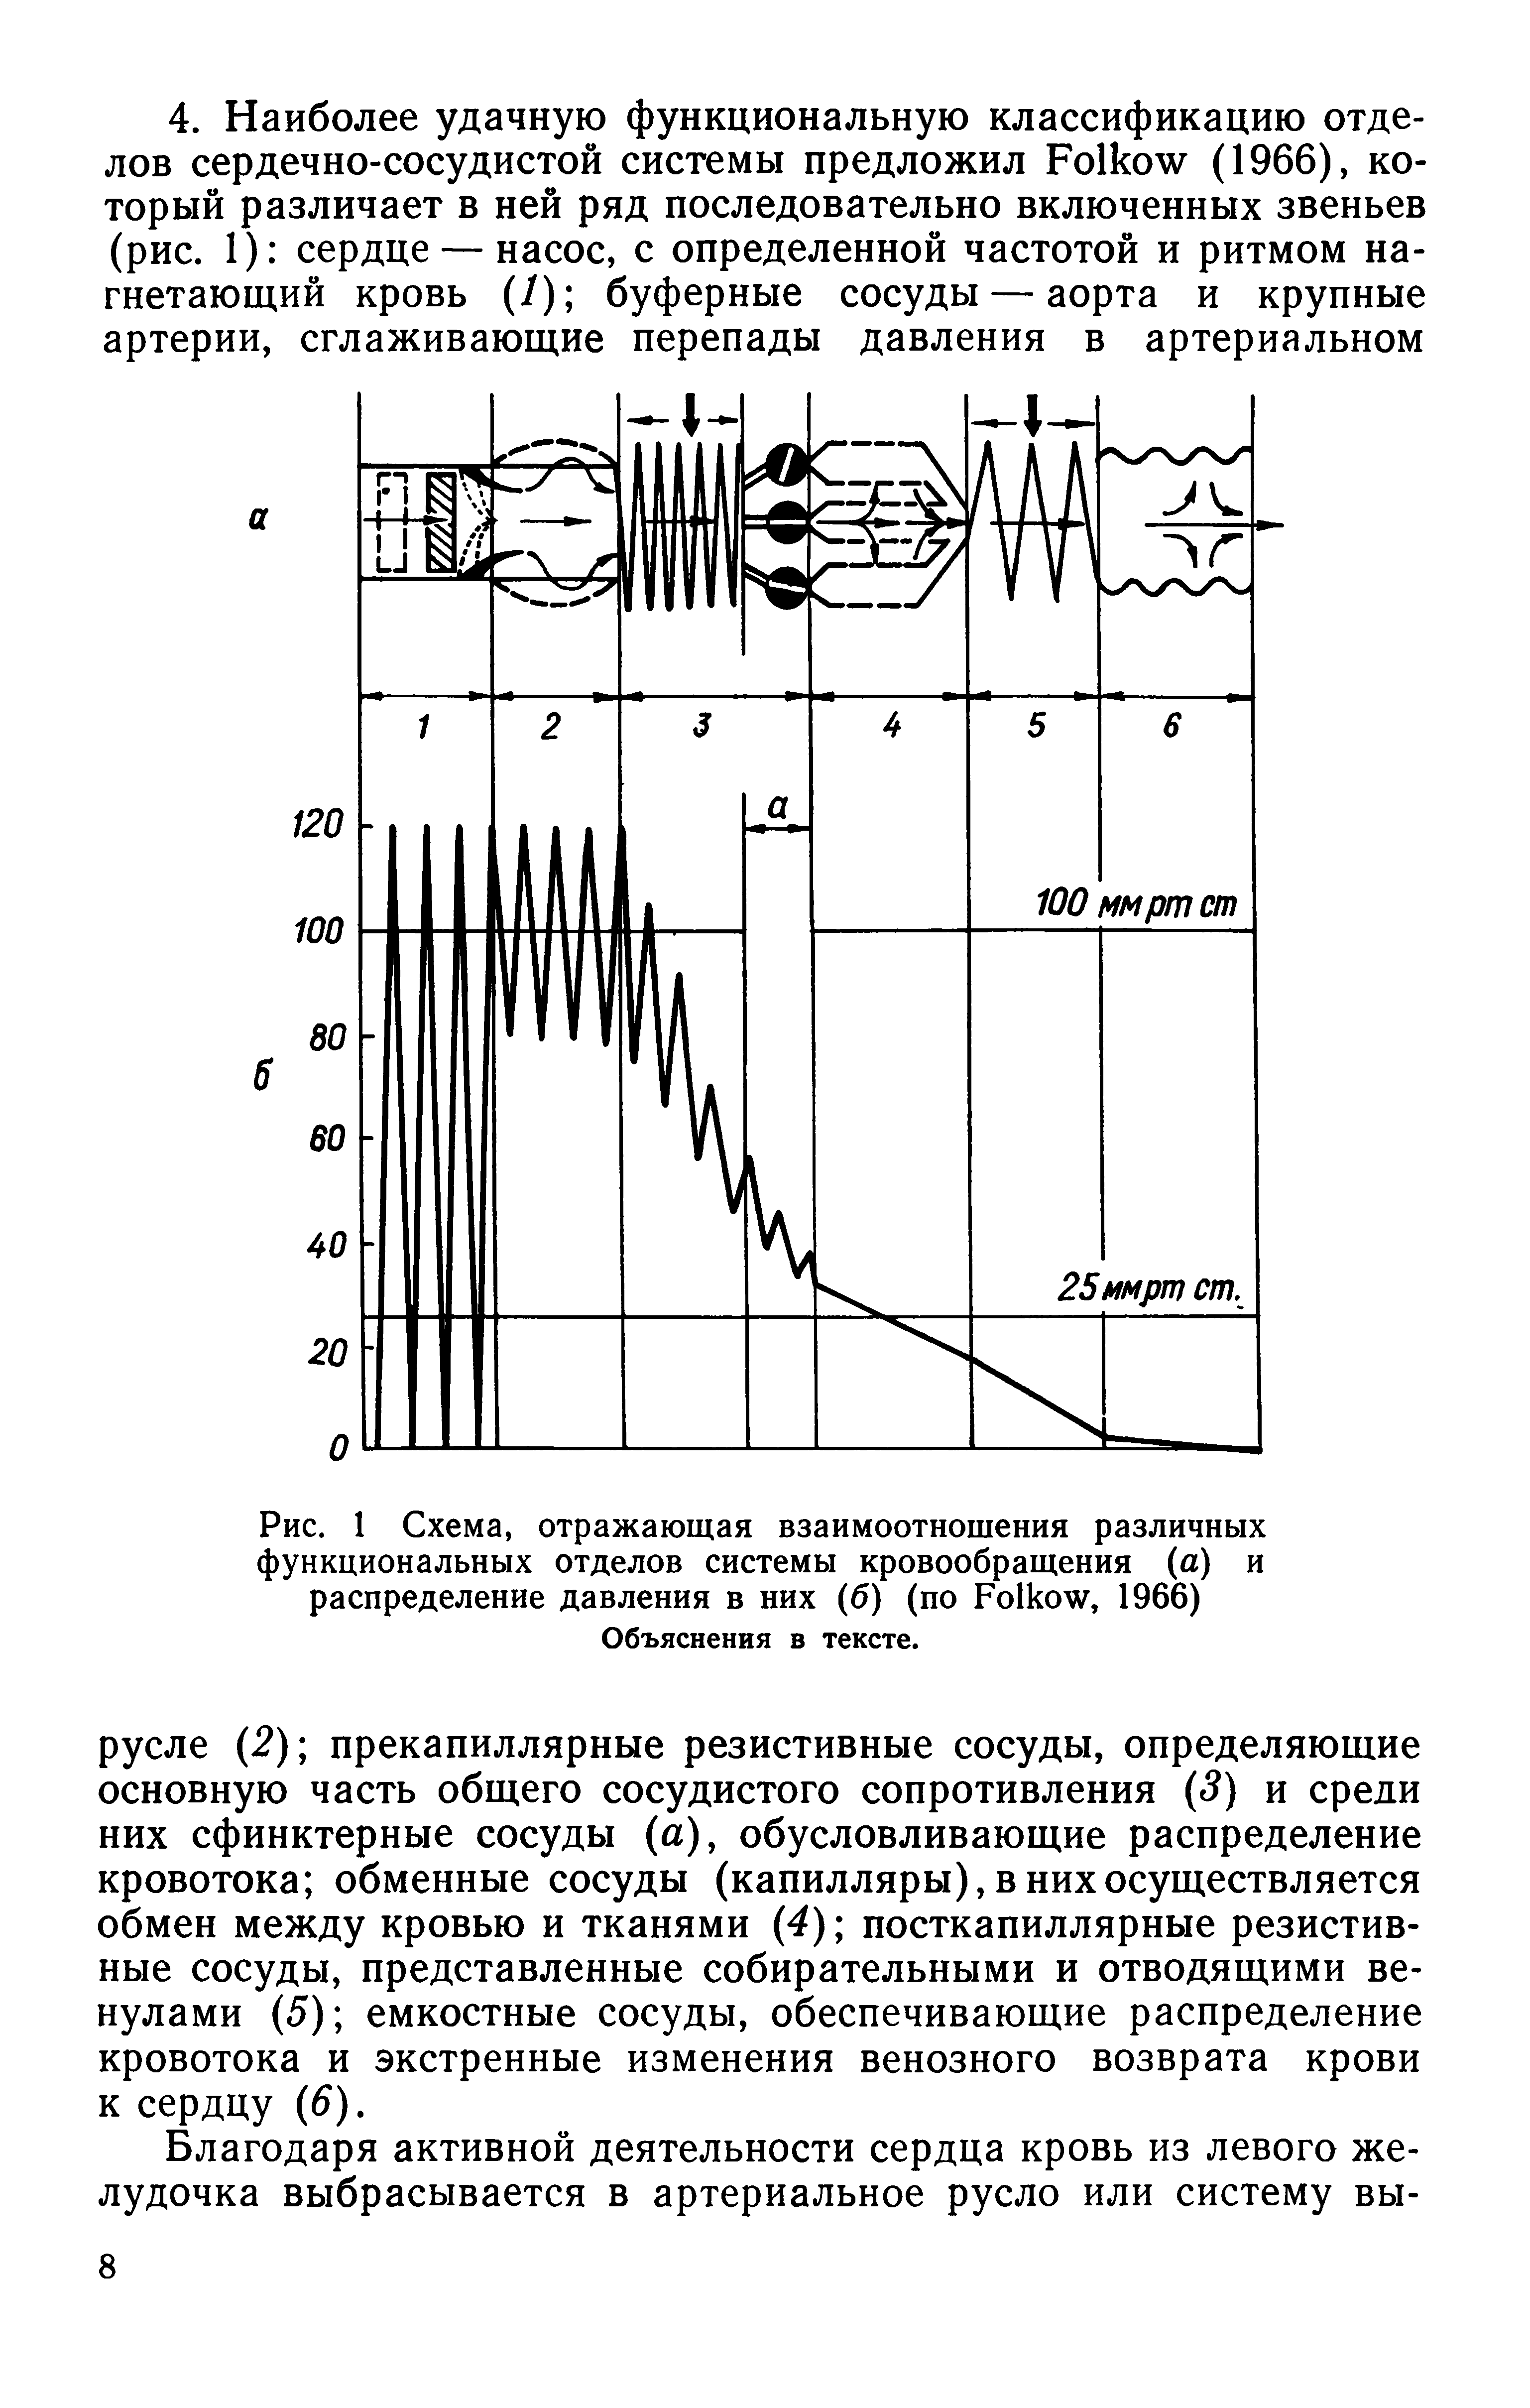 Рис. 1 Схема, отражающая взаимоотношения различных функциональных отделов системы кровообращения (а) и распределение давления в них (б) (по Ро1к<, 1966) Объяснения в тексте.